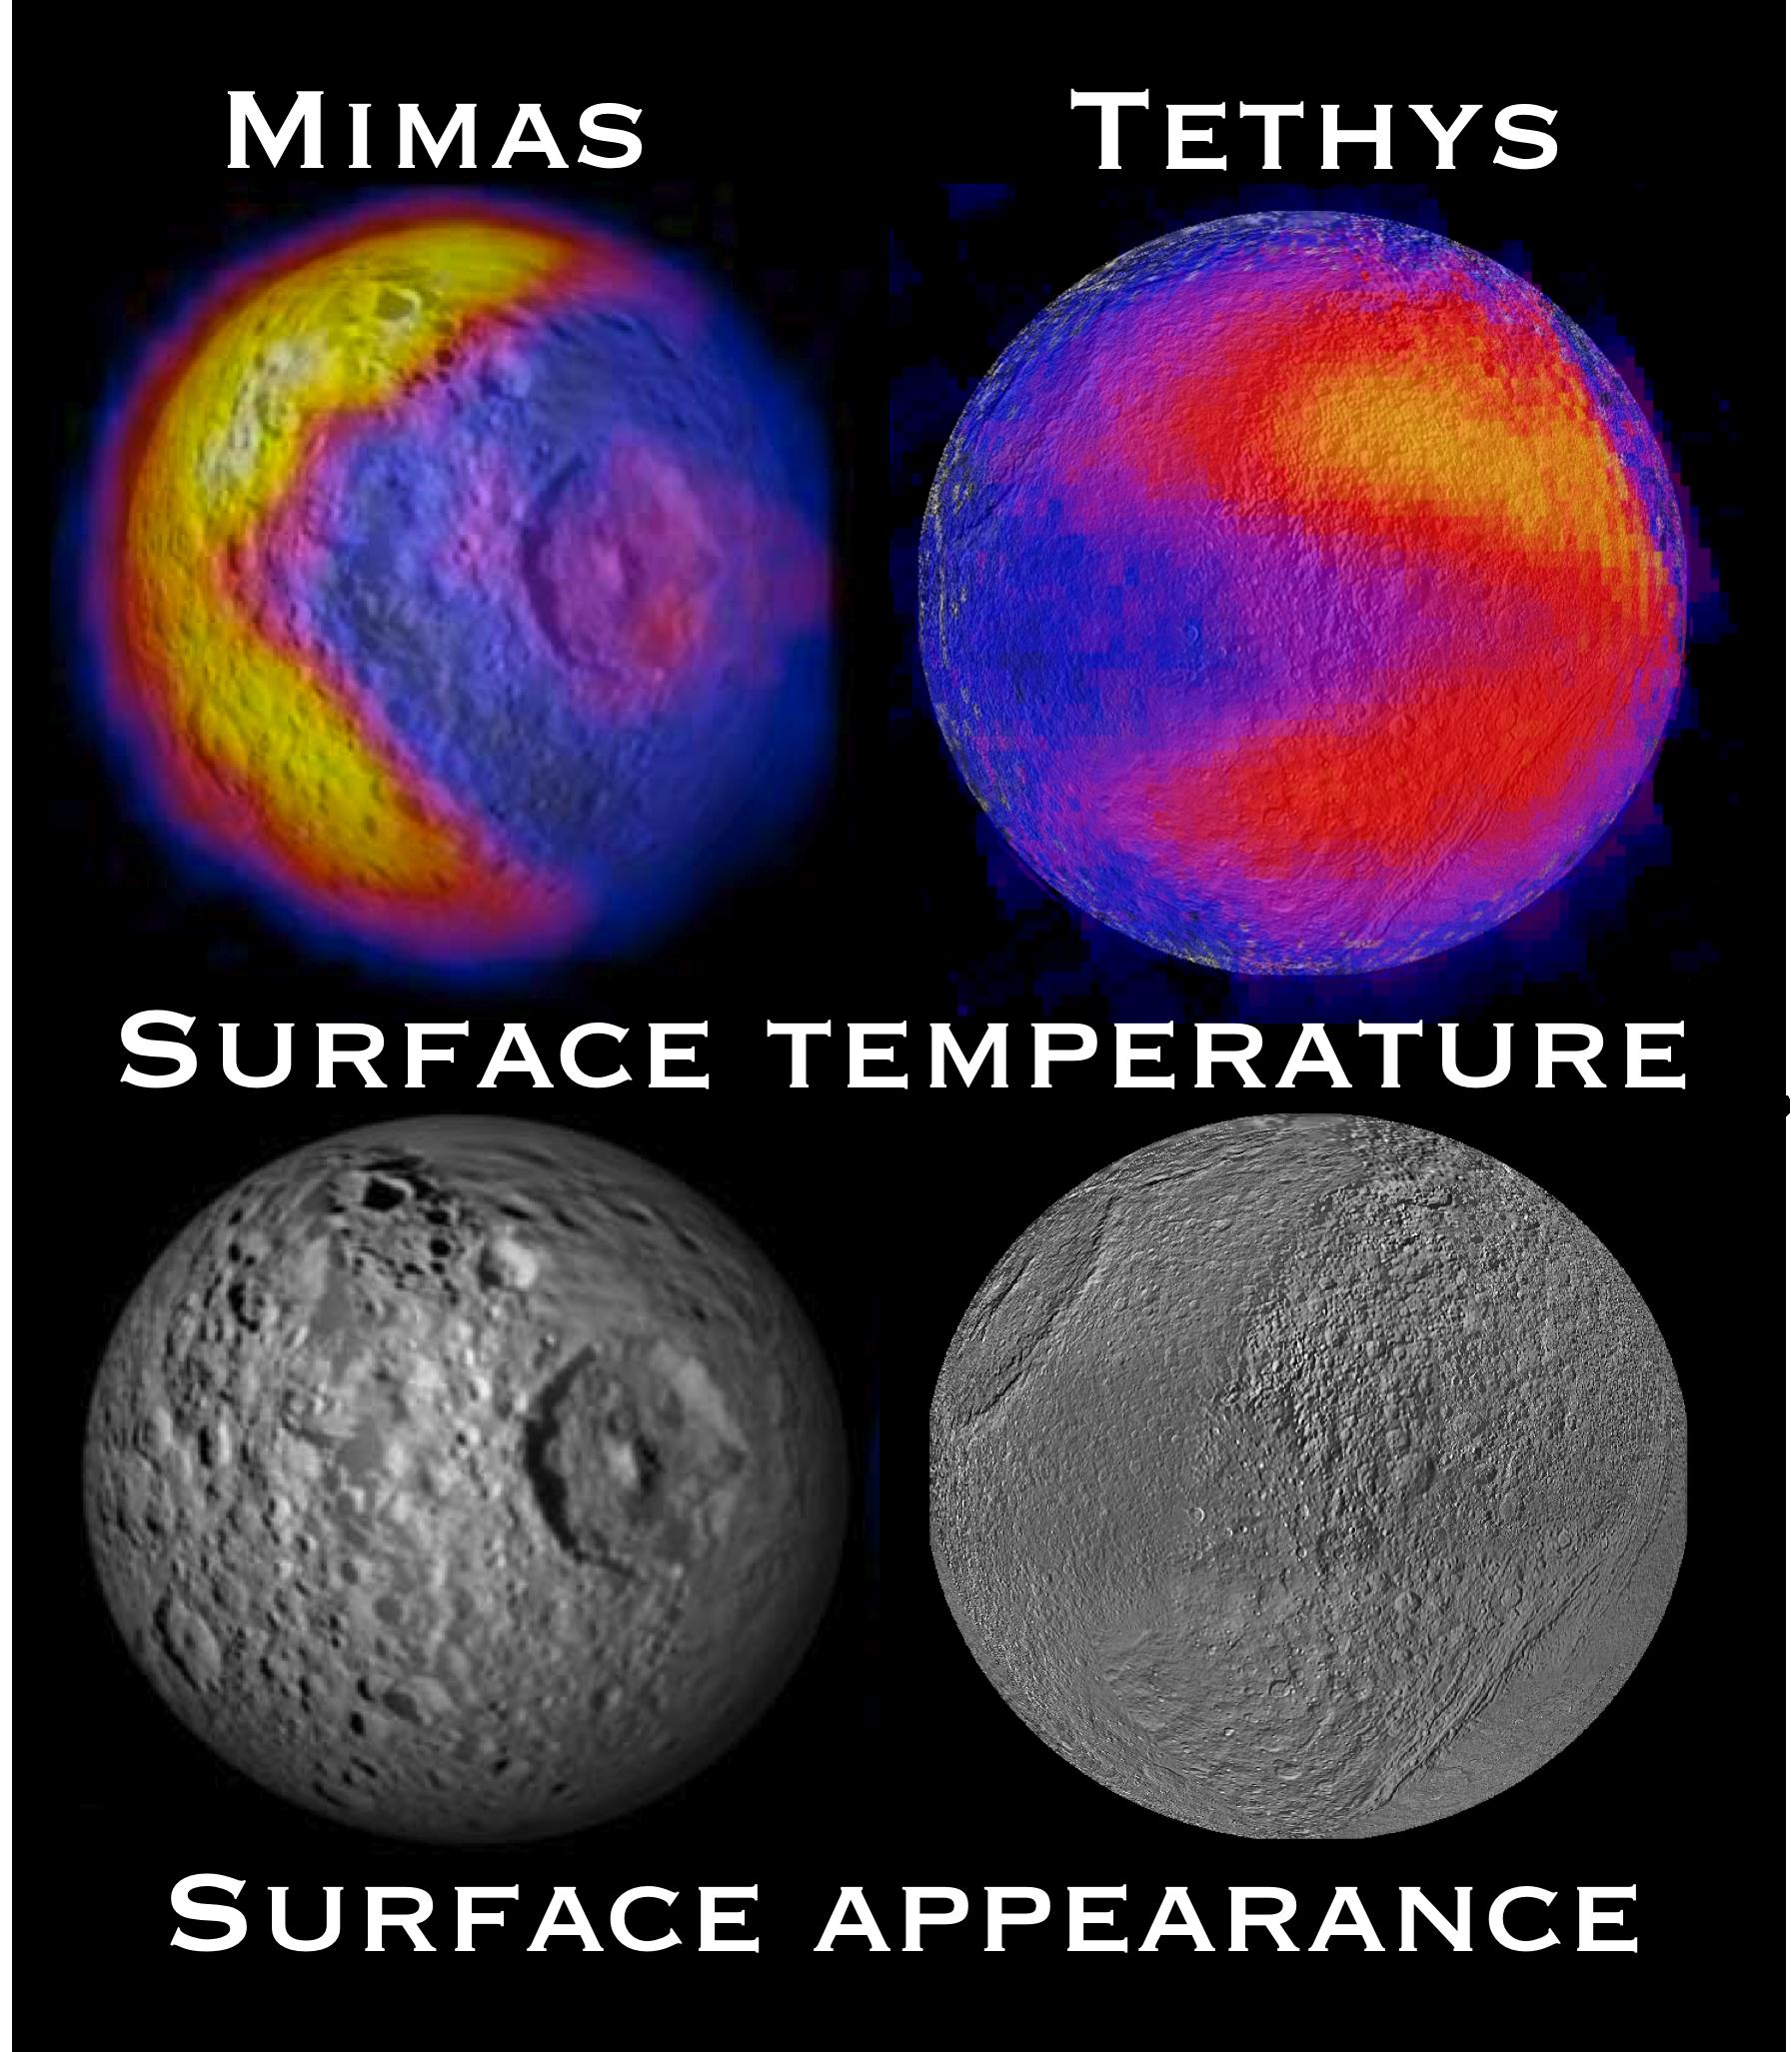 Mimas and Tethys